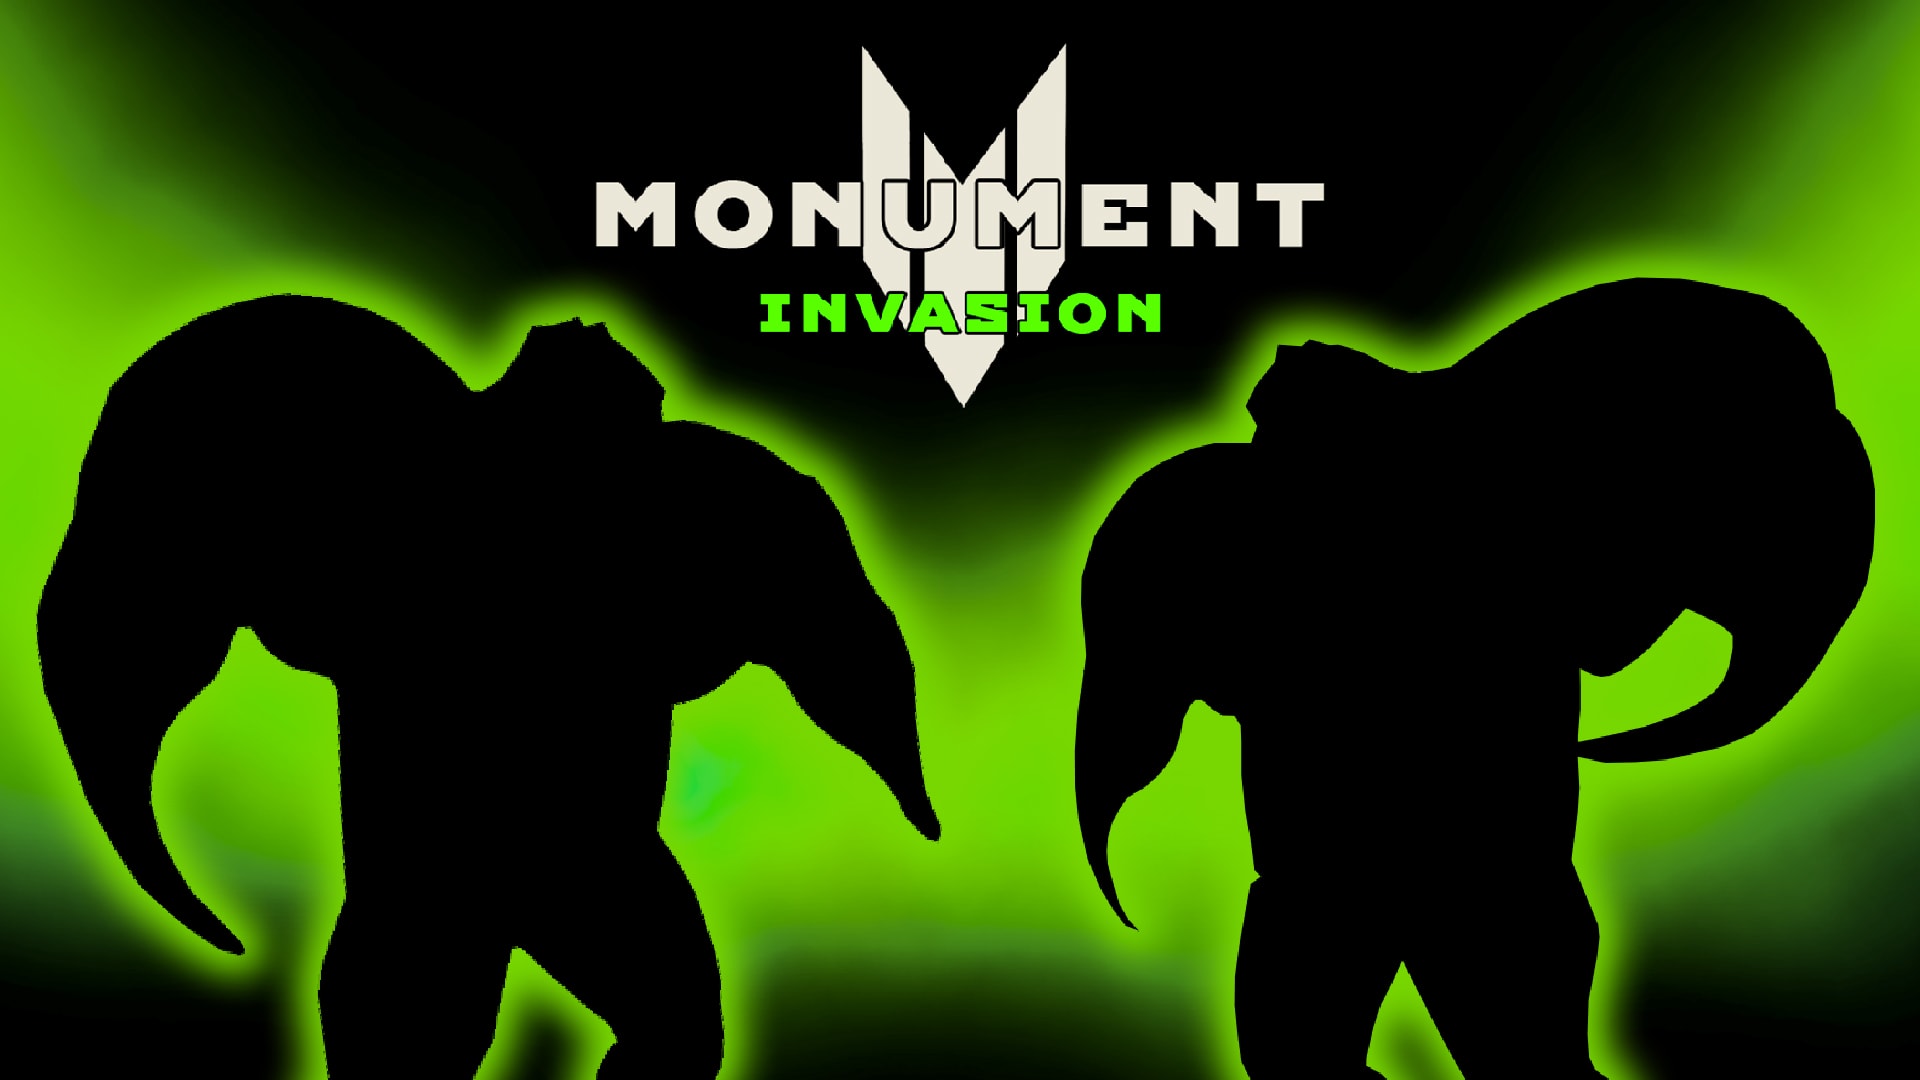 Monument: Invasion